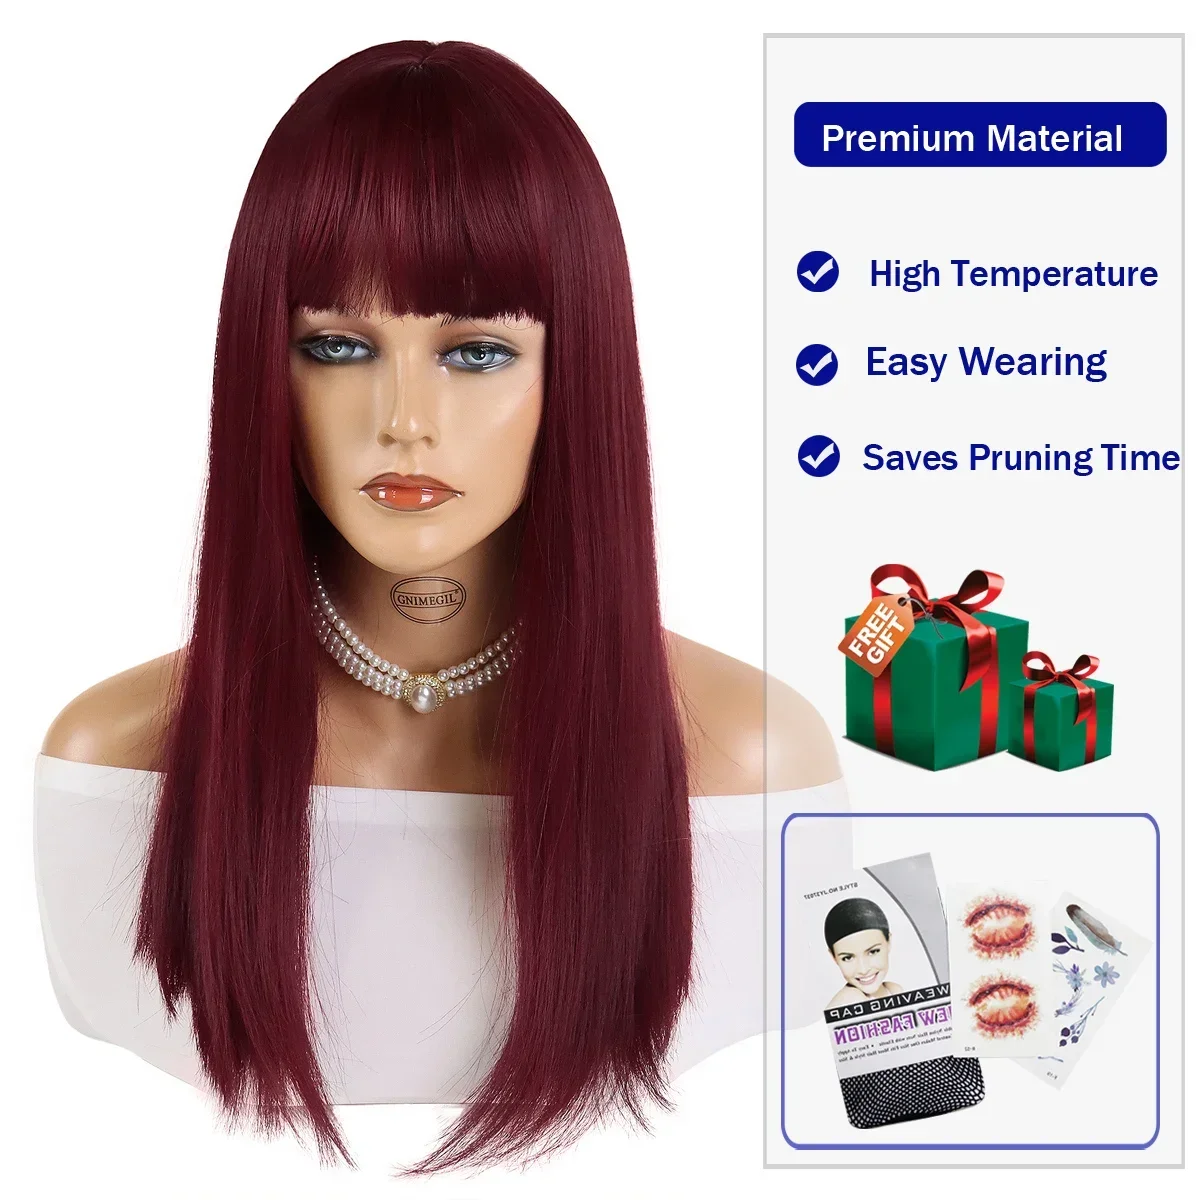 GNIMEGIL סינתטי ארוך אדום פאה עם פוני ישר תסרוקות שיער לנשים עמיד בפני חום סיבים קוספליי פאה לתחפושת חום הפאה - 2